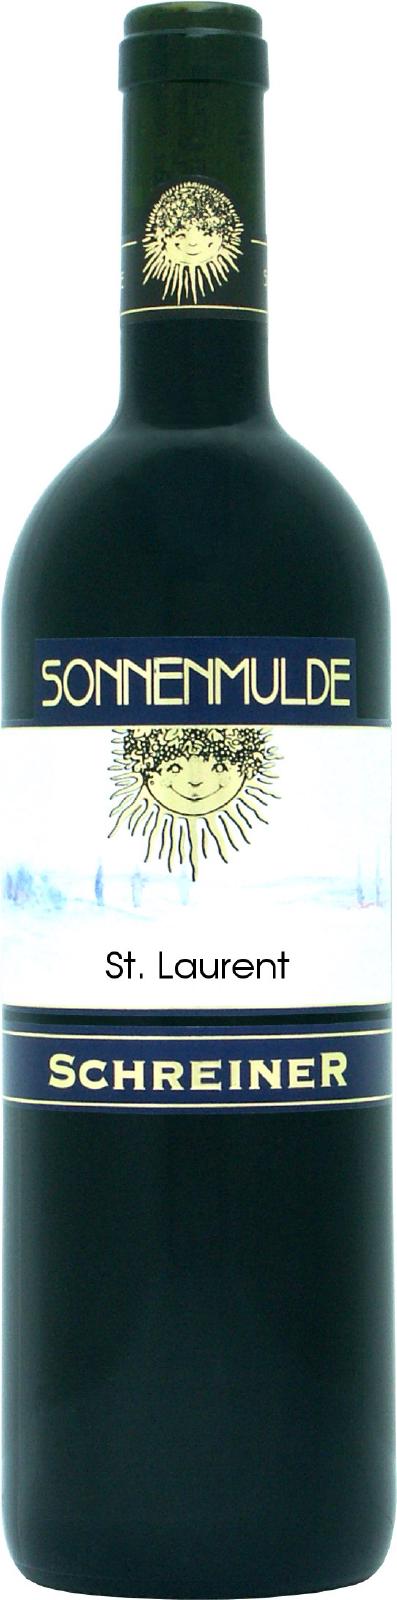 Eine Flasche St. Laurent